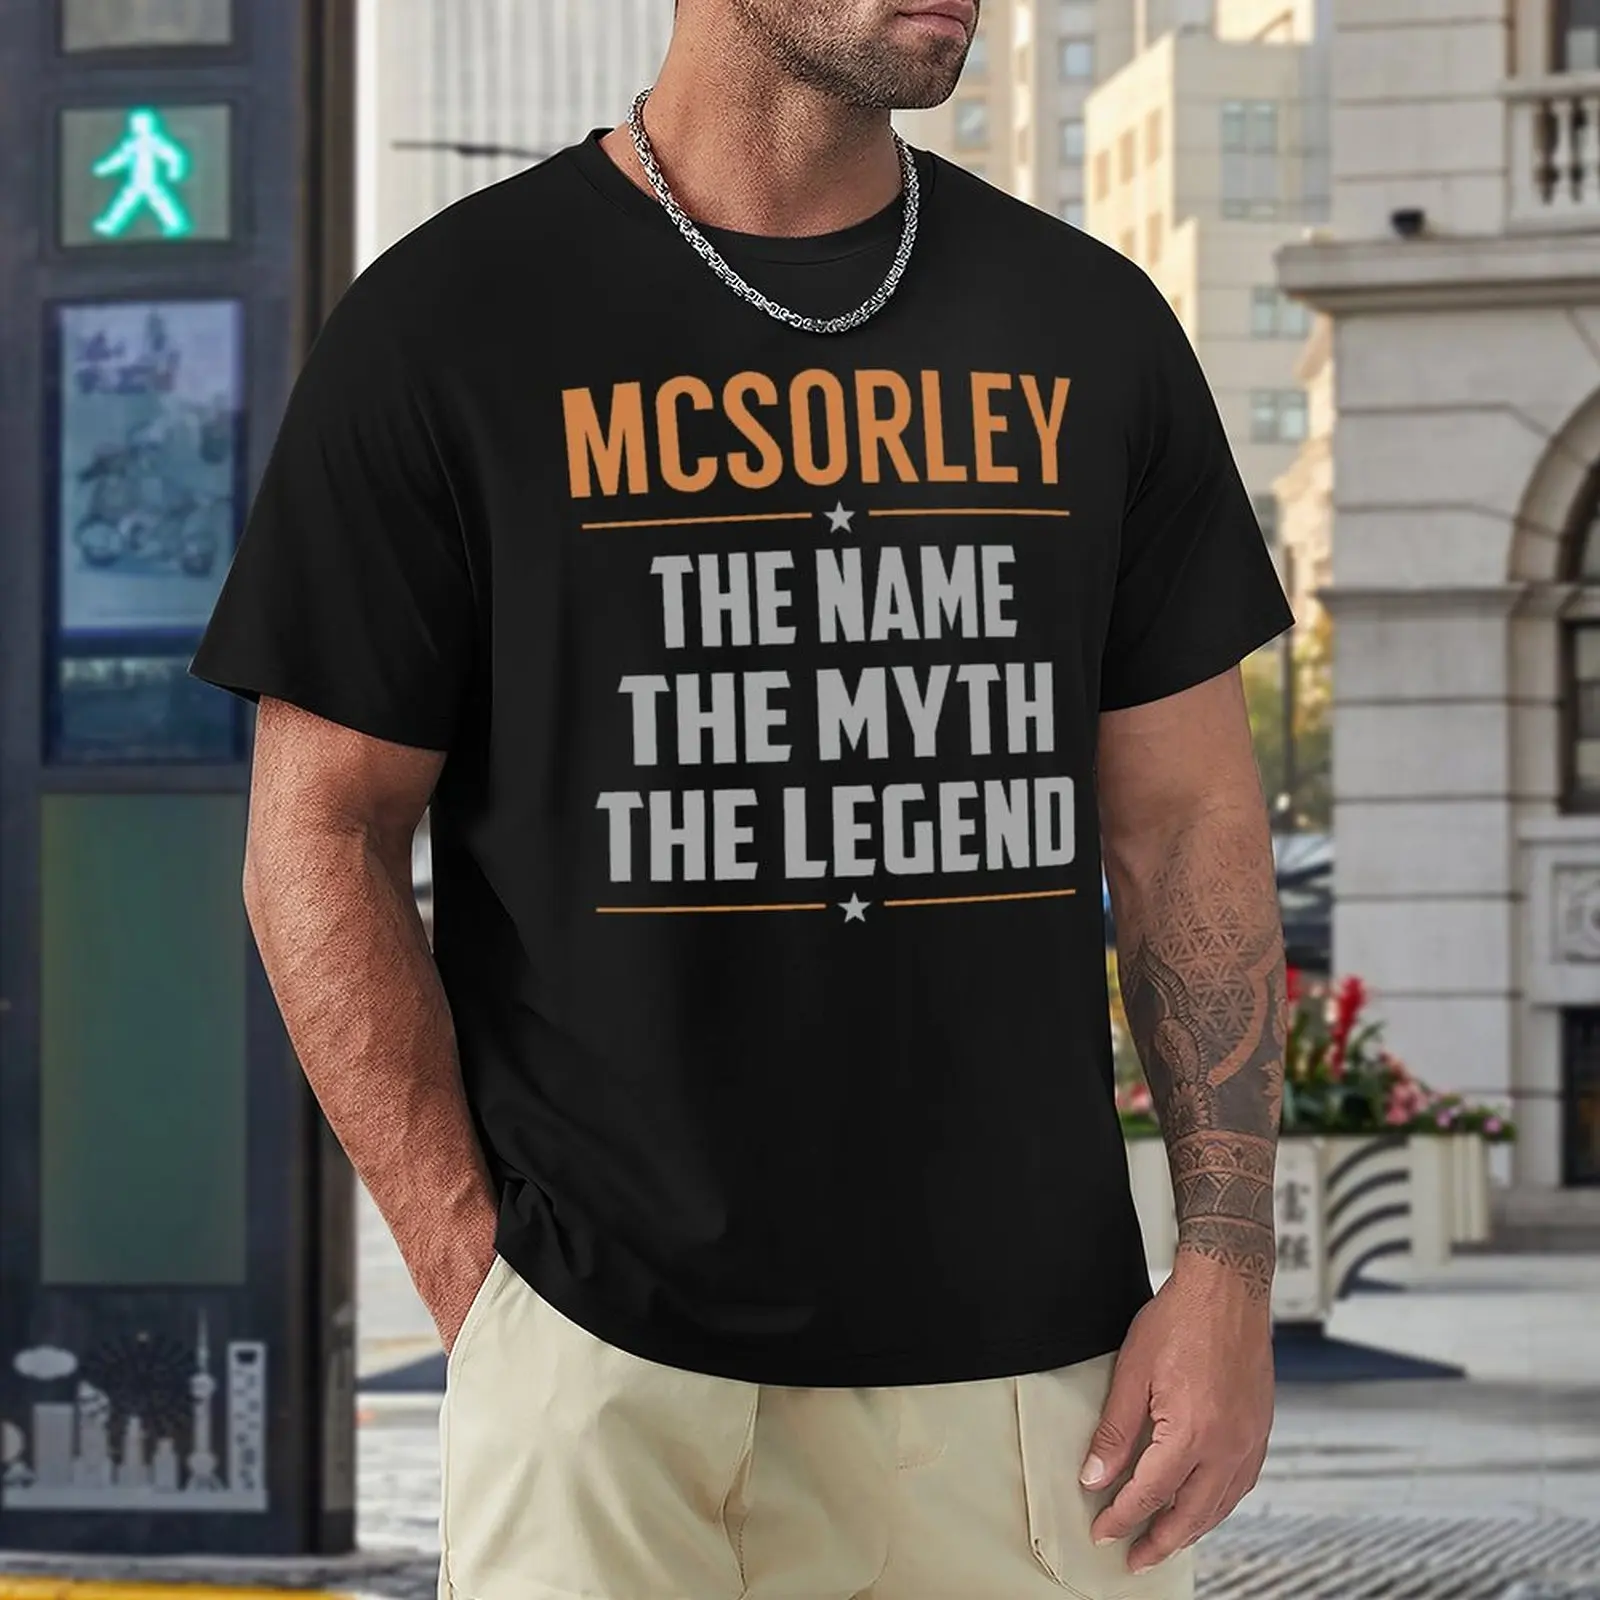 

Футболка MCSORLEY с надписью «The Myth The Legend», футболка Mcso с круглым вырезом, новинка, смешные футболки для соревнований по активности, американский размер